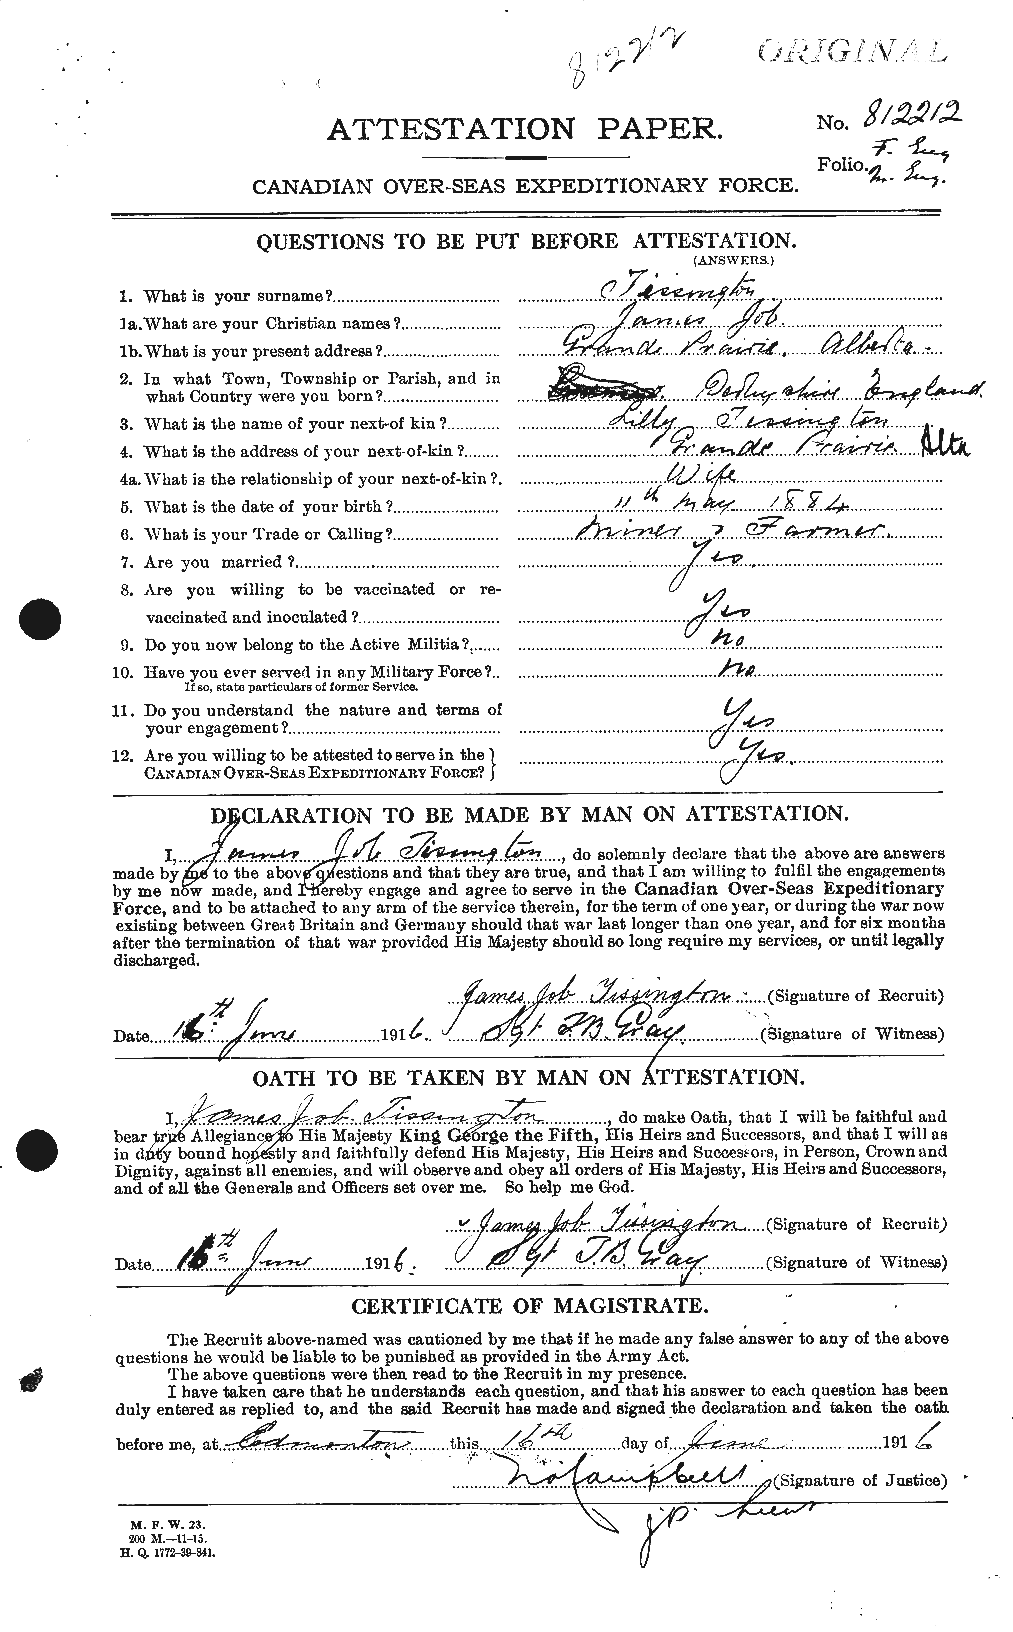 Dossiers du Personnel de la Première Guerre mondiale - CEC 634864a